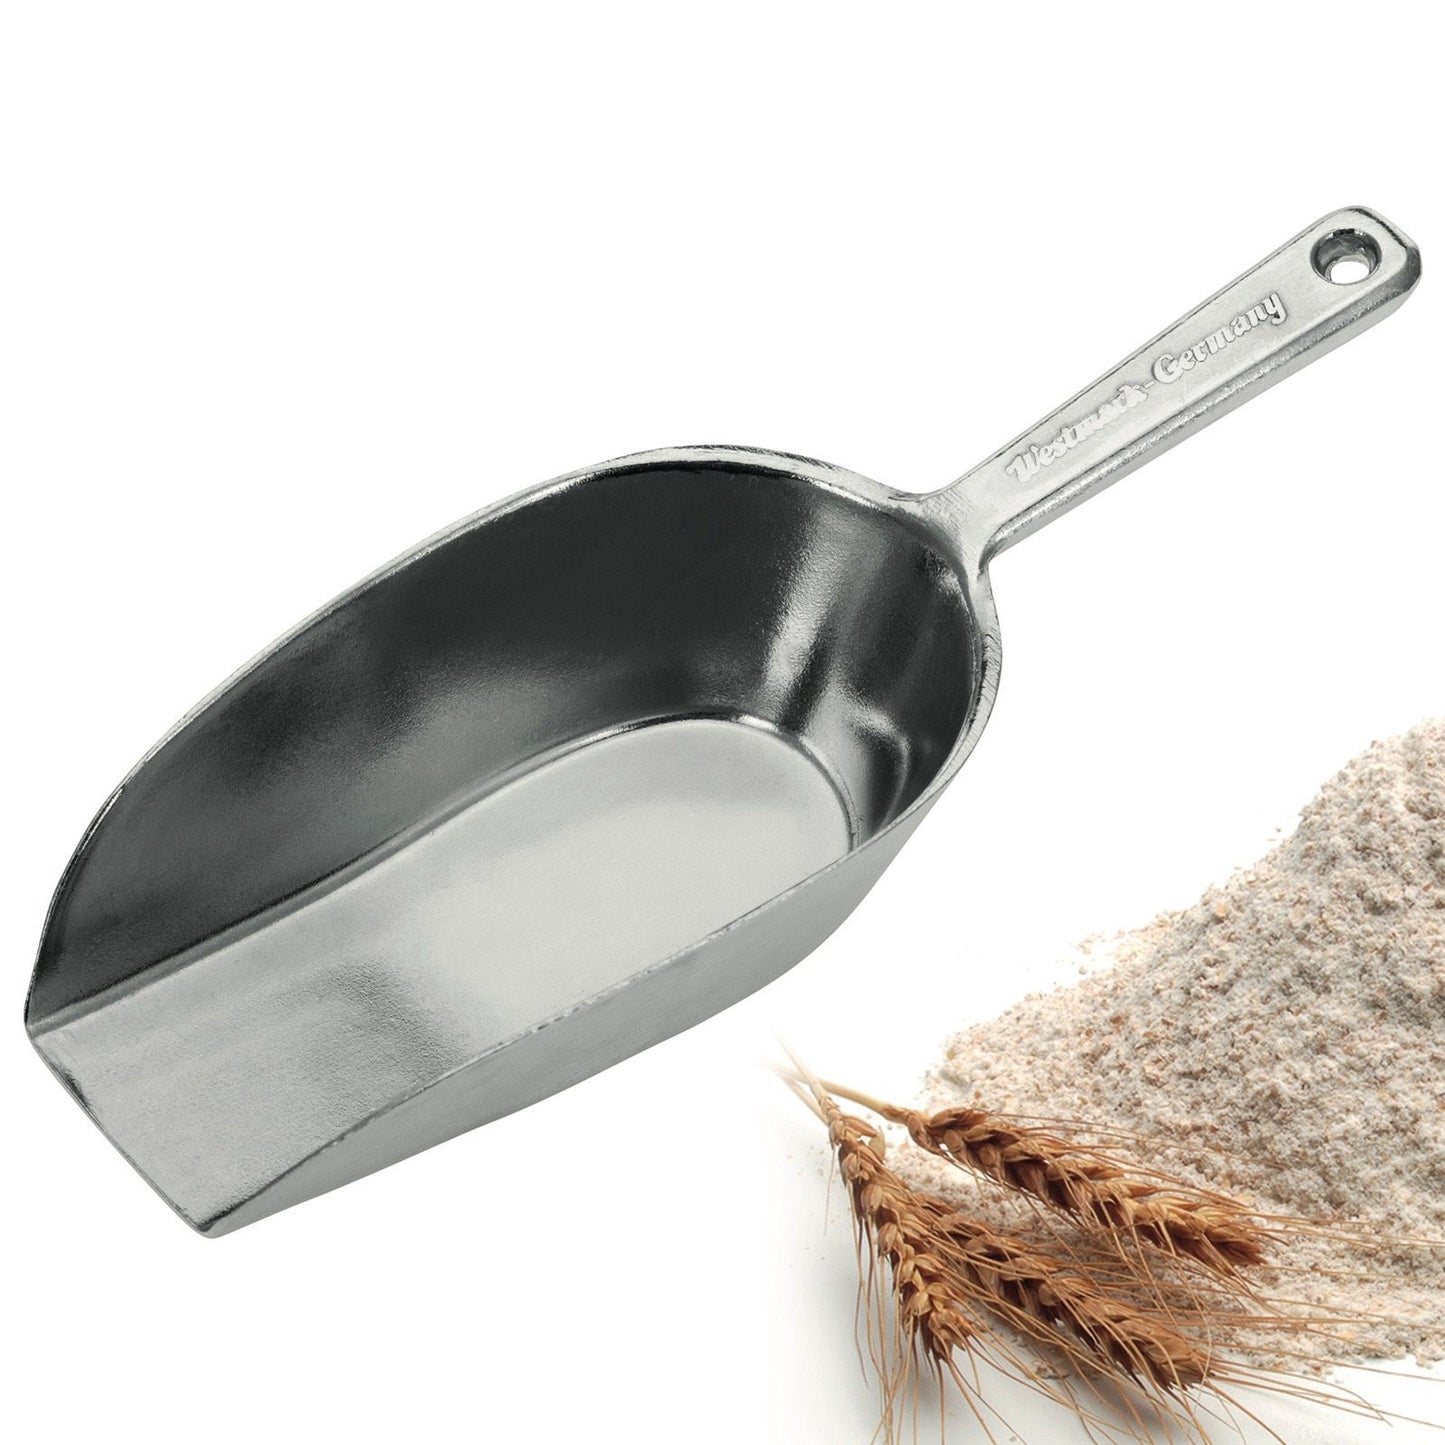 Westmark flour scoop